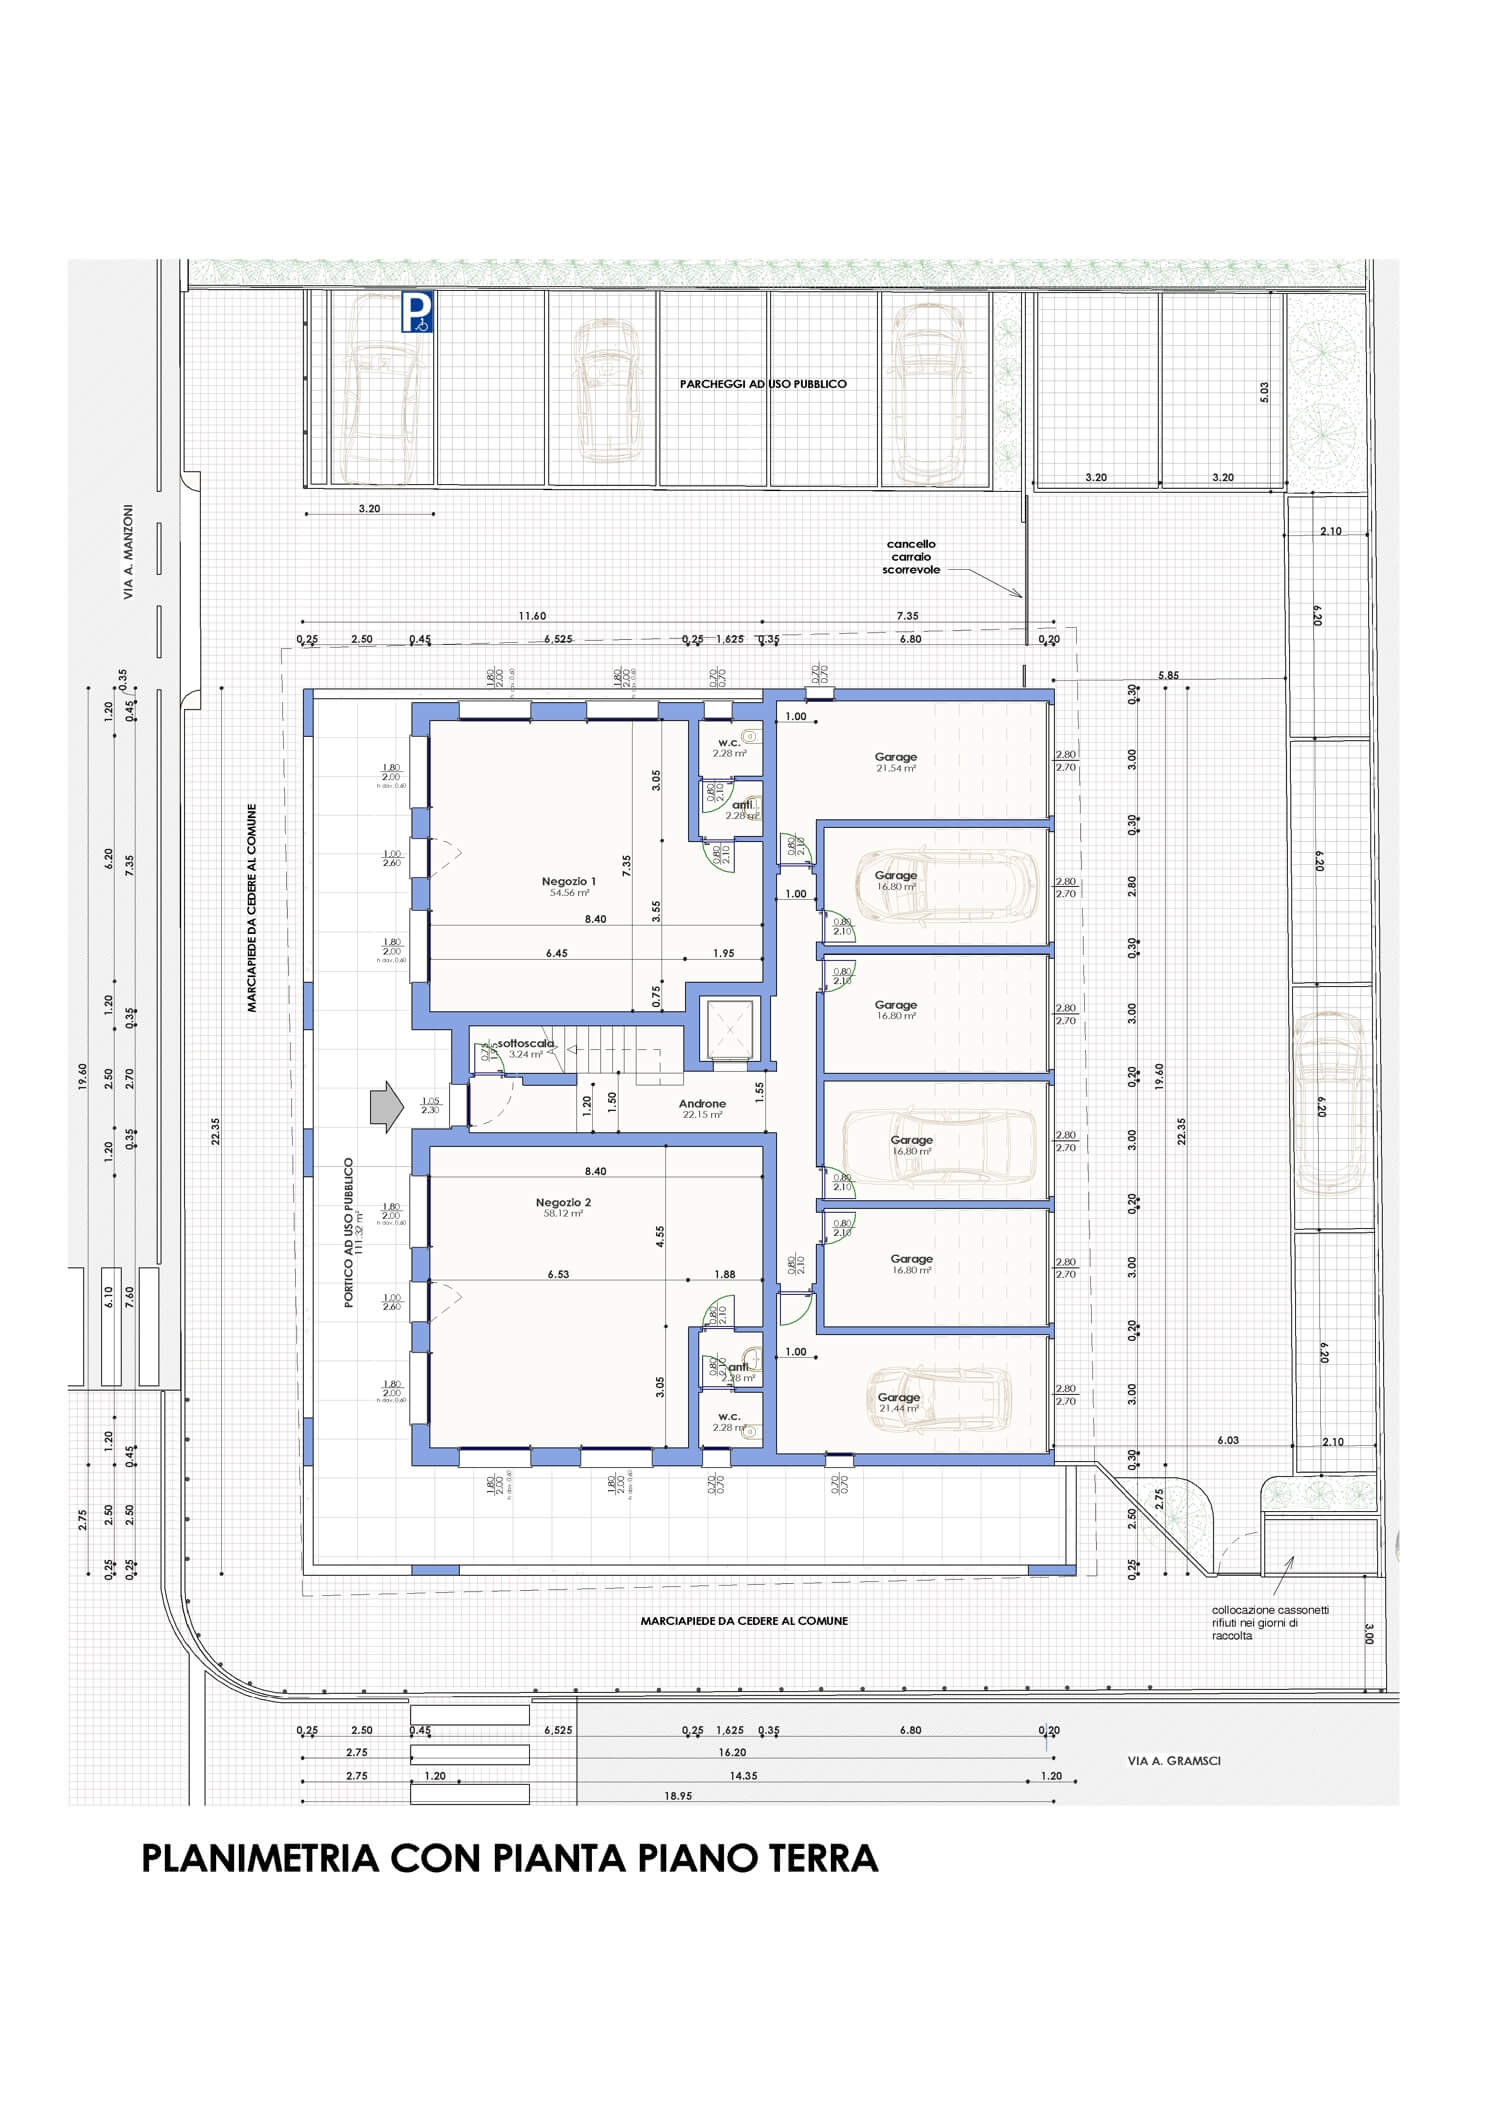 Costruzioni Pestrin Appartamenti Preganziol via Manzoni Planimetria con pianta piano terra 1500x2122